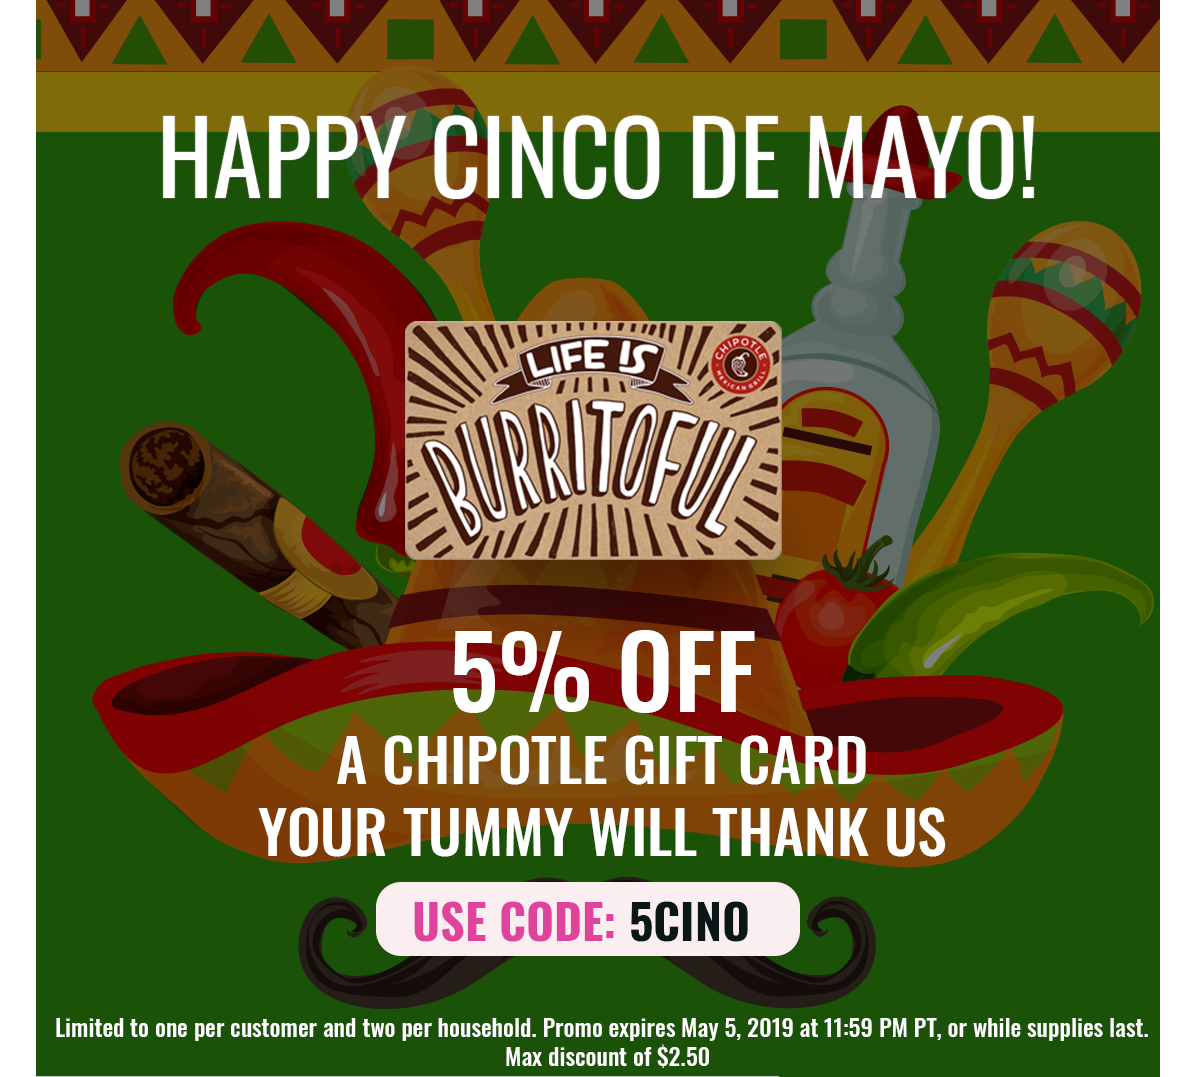 Popup khuyến mãi giảm giá 5% của một cửa hàng trực tuyến nhân ngày Cinco de Mayo